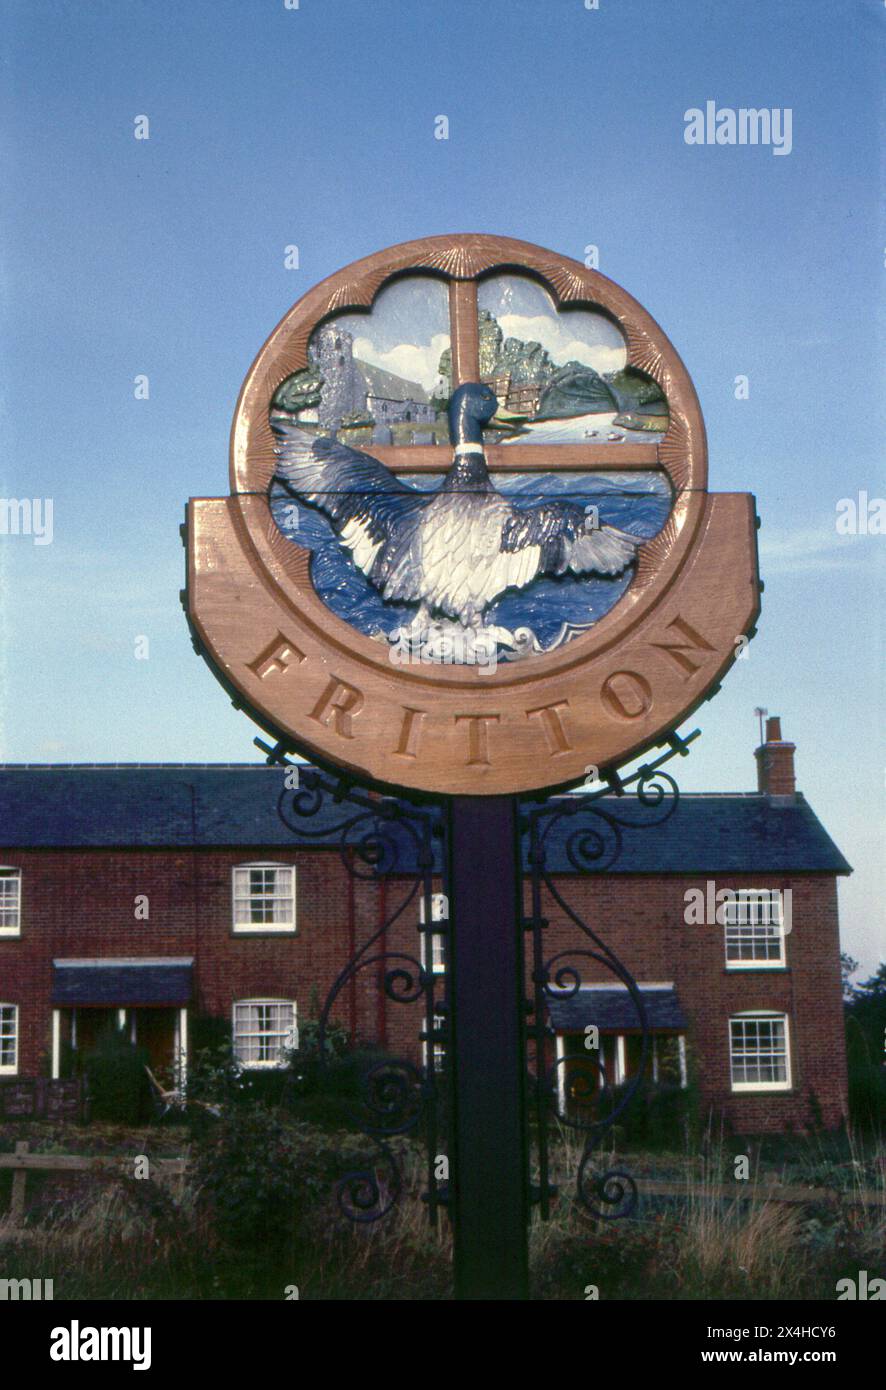 Norfolk. 1987: Ein Foto des Dorfzeichens Fritton in Norfolk, England. Das Schild ist mit einem Bild einer Ente und der Dorfkirche St. Edmond verziert. Fritton liegt 6 Meilen südwestlich von Great Yarmouth und 26 Meilen südöstlich von Norwich. Stockfoto